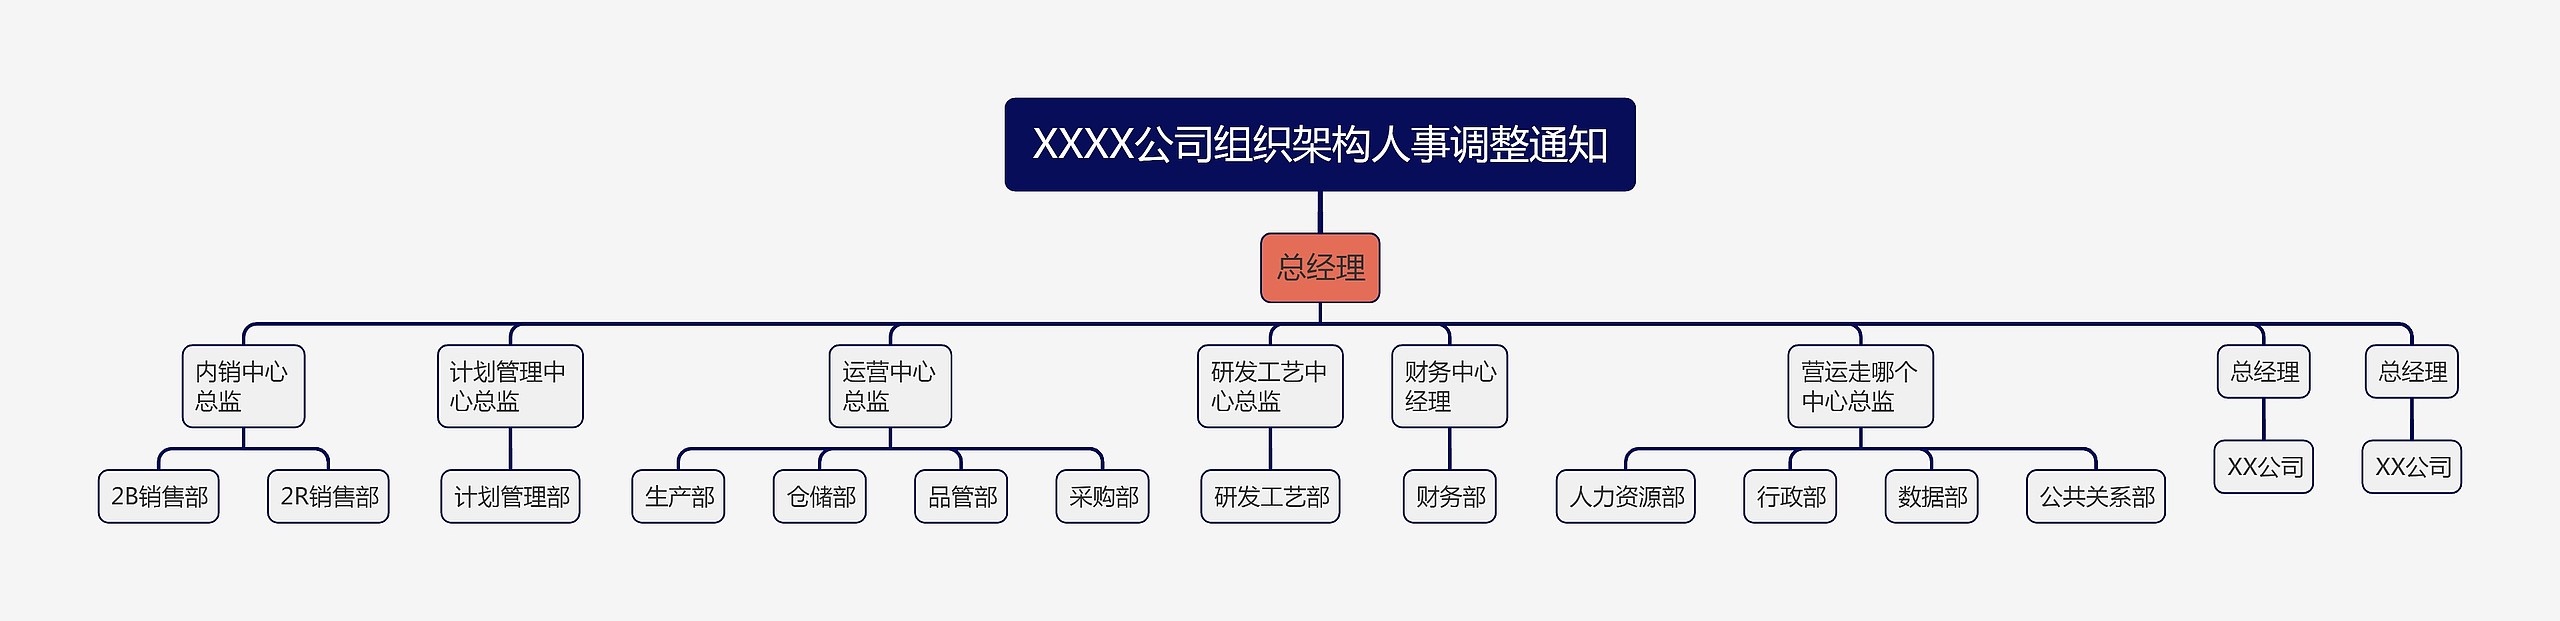 XXXX公司组织架构人事调整通知思维导图